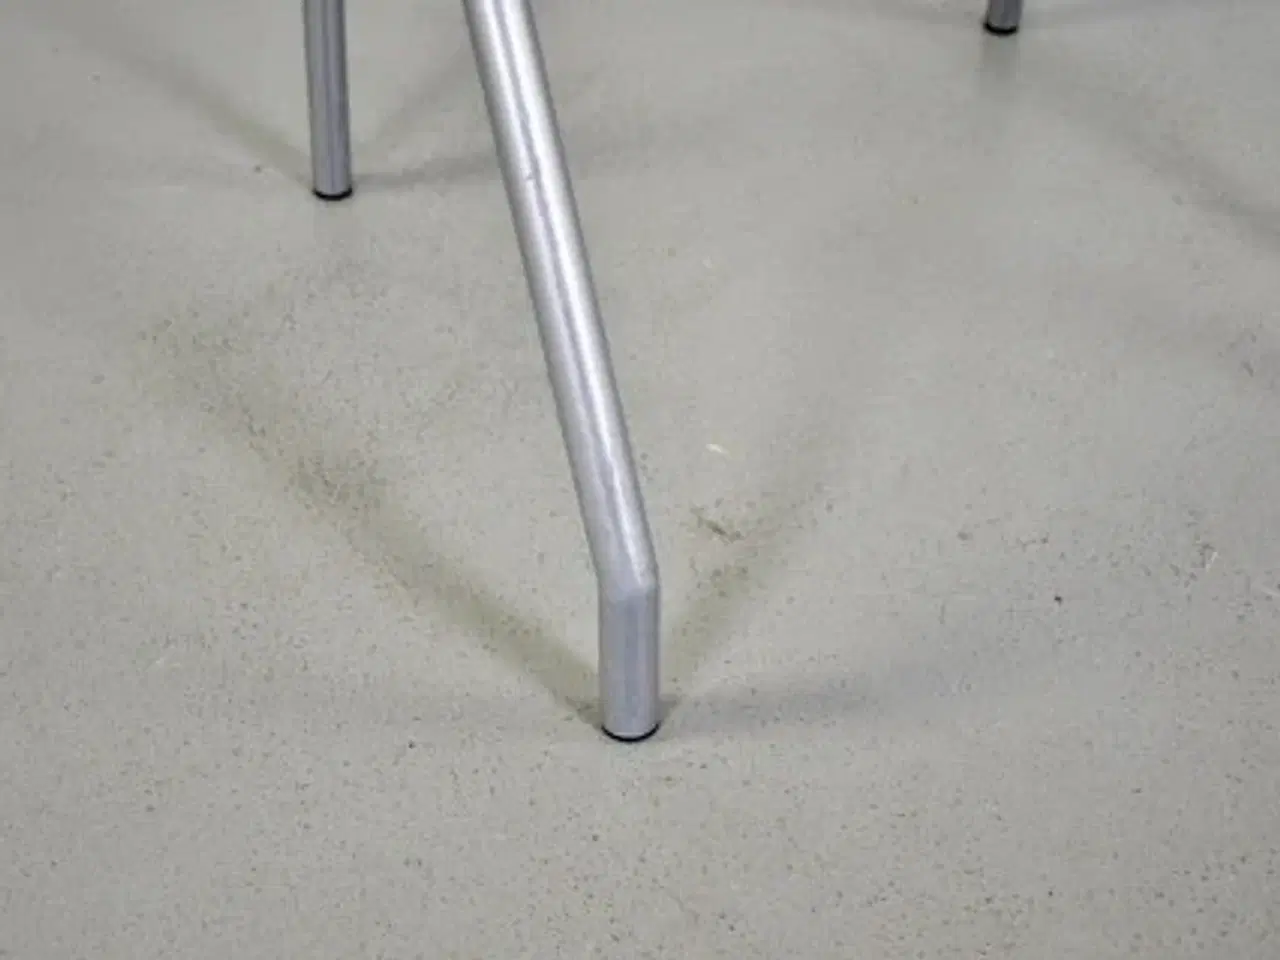 Billede 10 - Four design g2 konferencestol i grå med armlæn i bøg